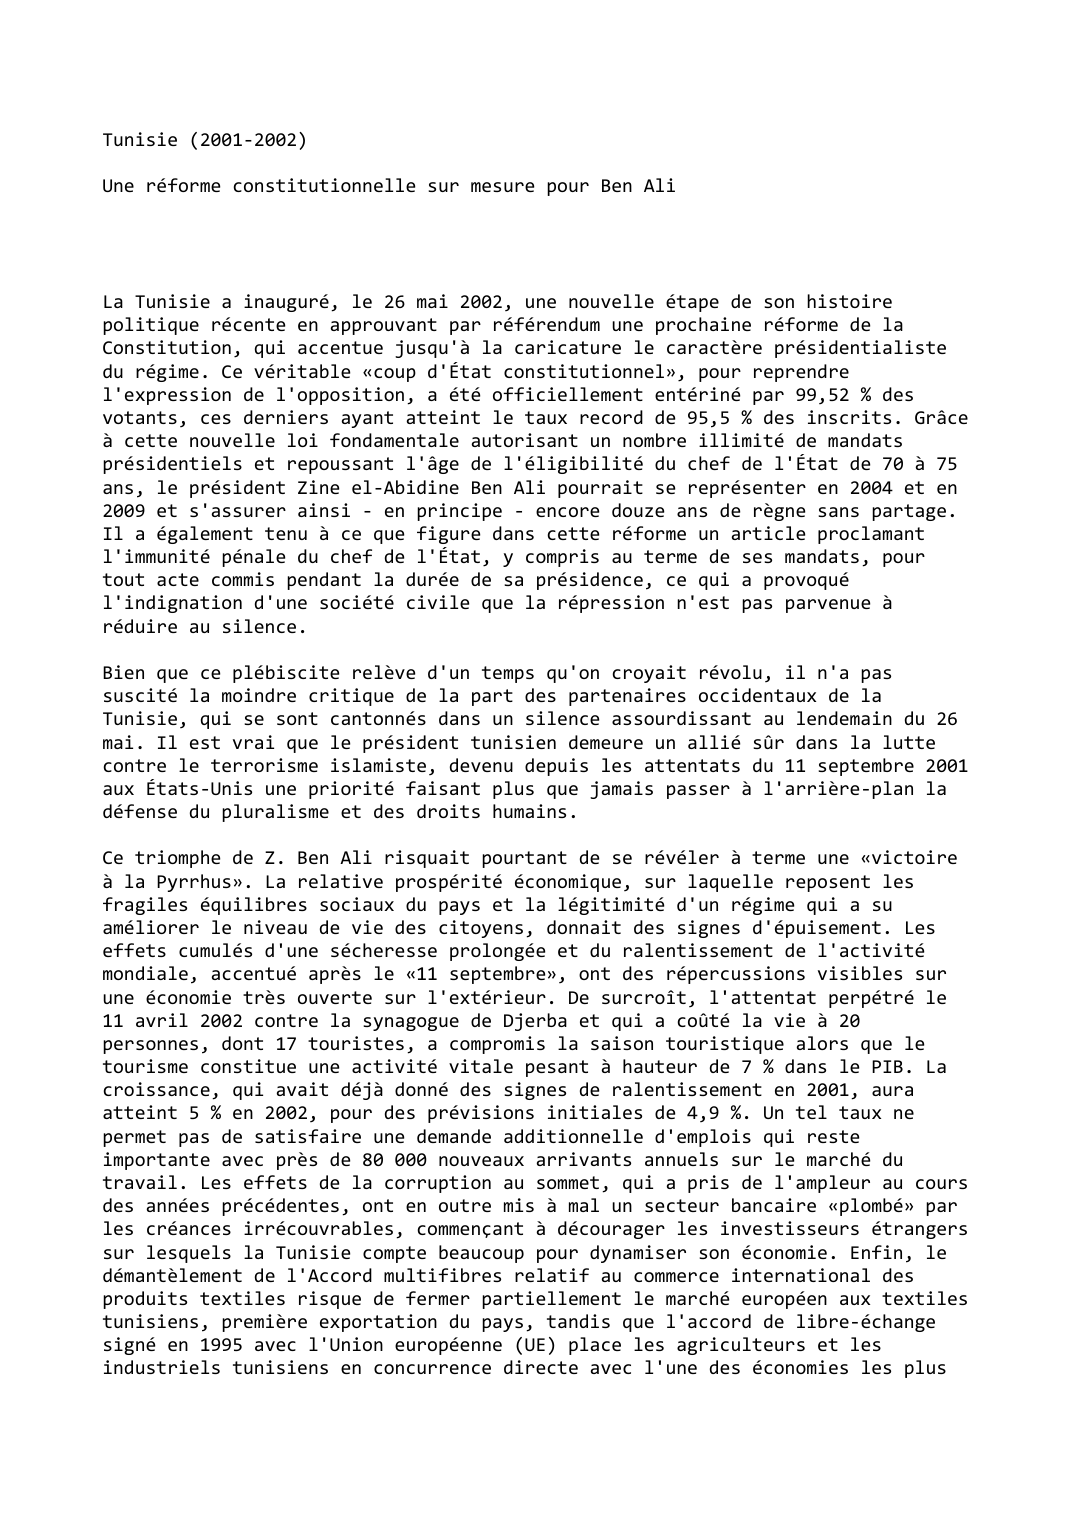 Prévisualisation du document Tunisie (2001-2002)

Une réforme constitutionnelle sur mesure pour Ben Ali